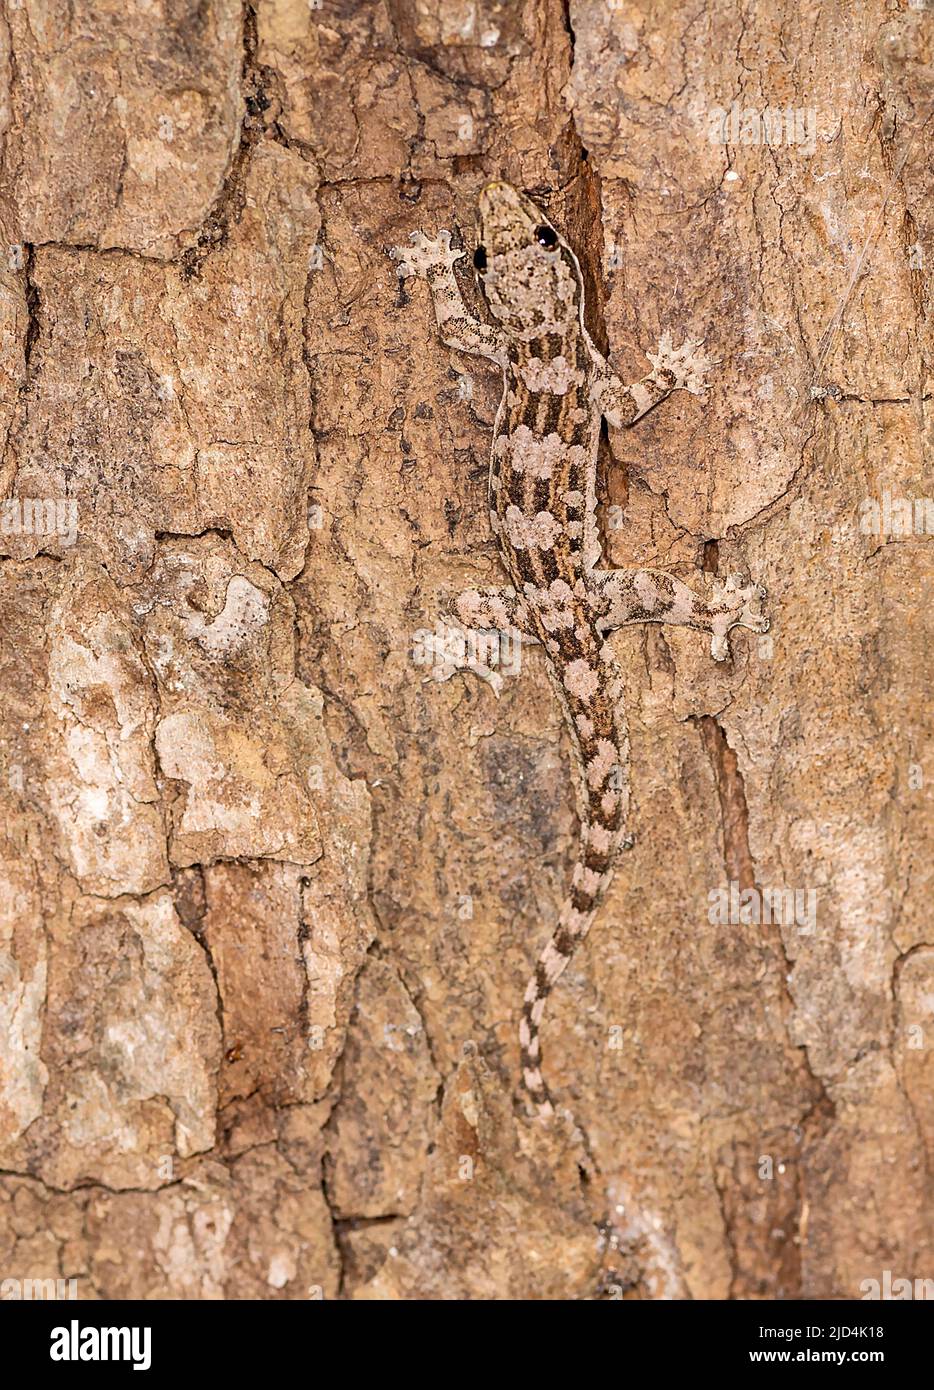 Gecko de dedos doblados (Cyrtodactylus sp.) de la isla de Komodo, Indonesia. Foto de stock